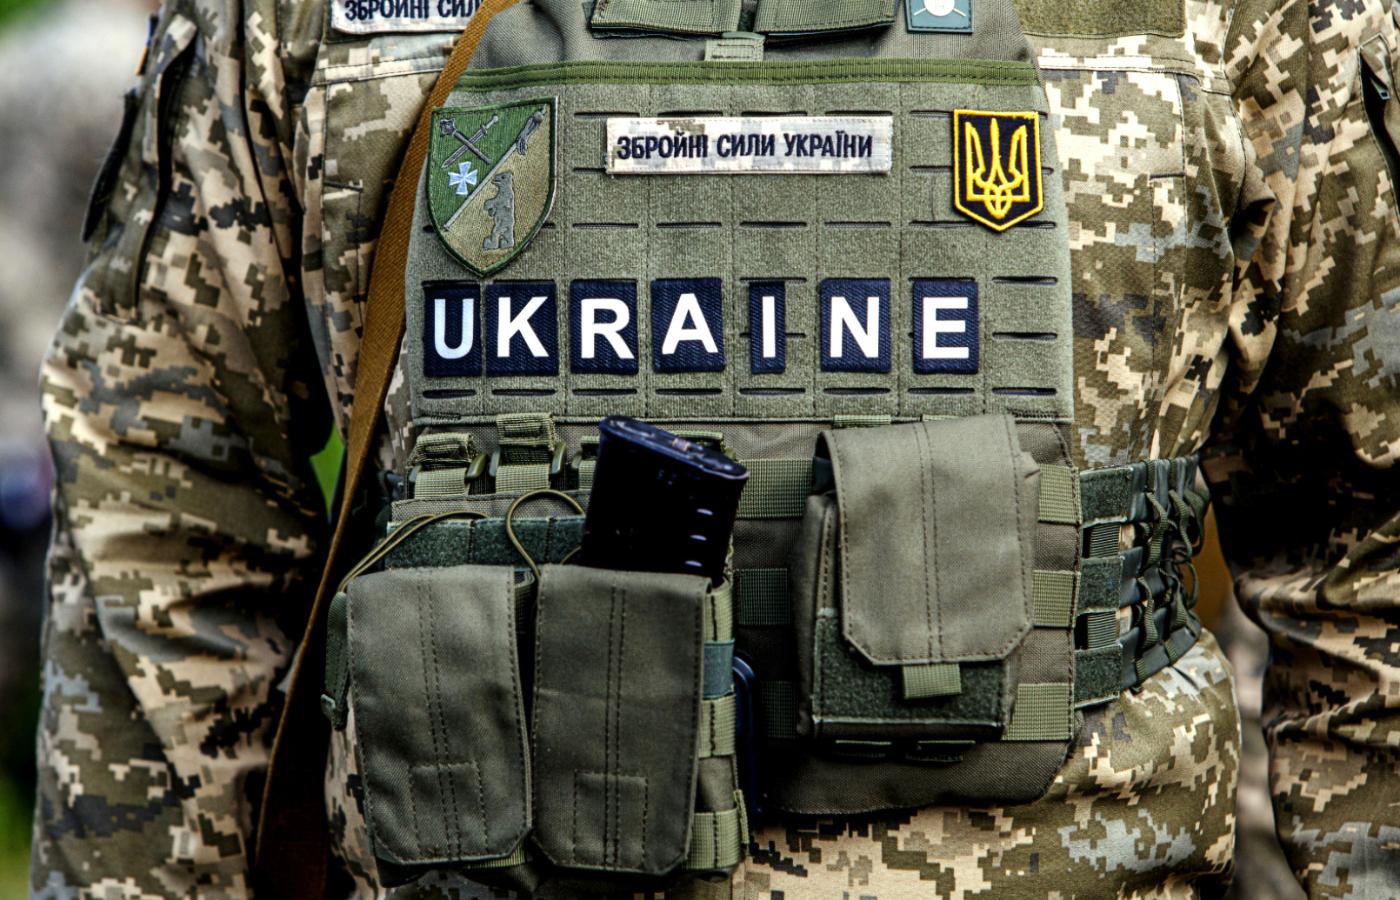 Ukraina tworzy Wojska Obrony Terytorialnej według ciekawego schematu.